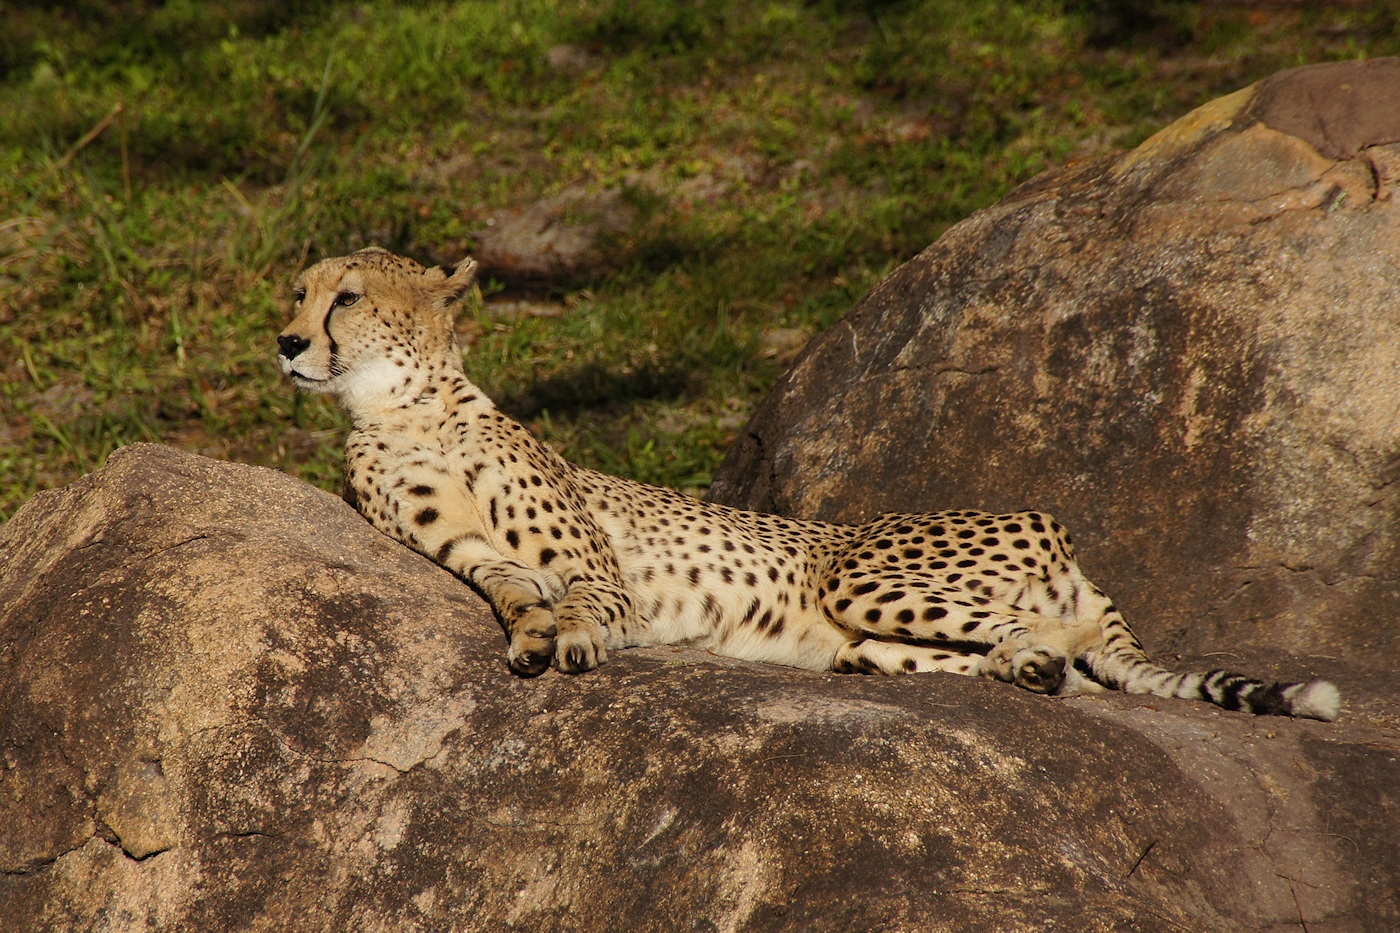 Cheetah disturbed from sleep